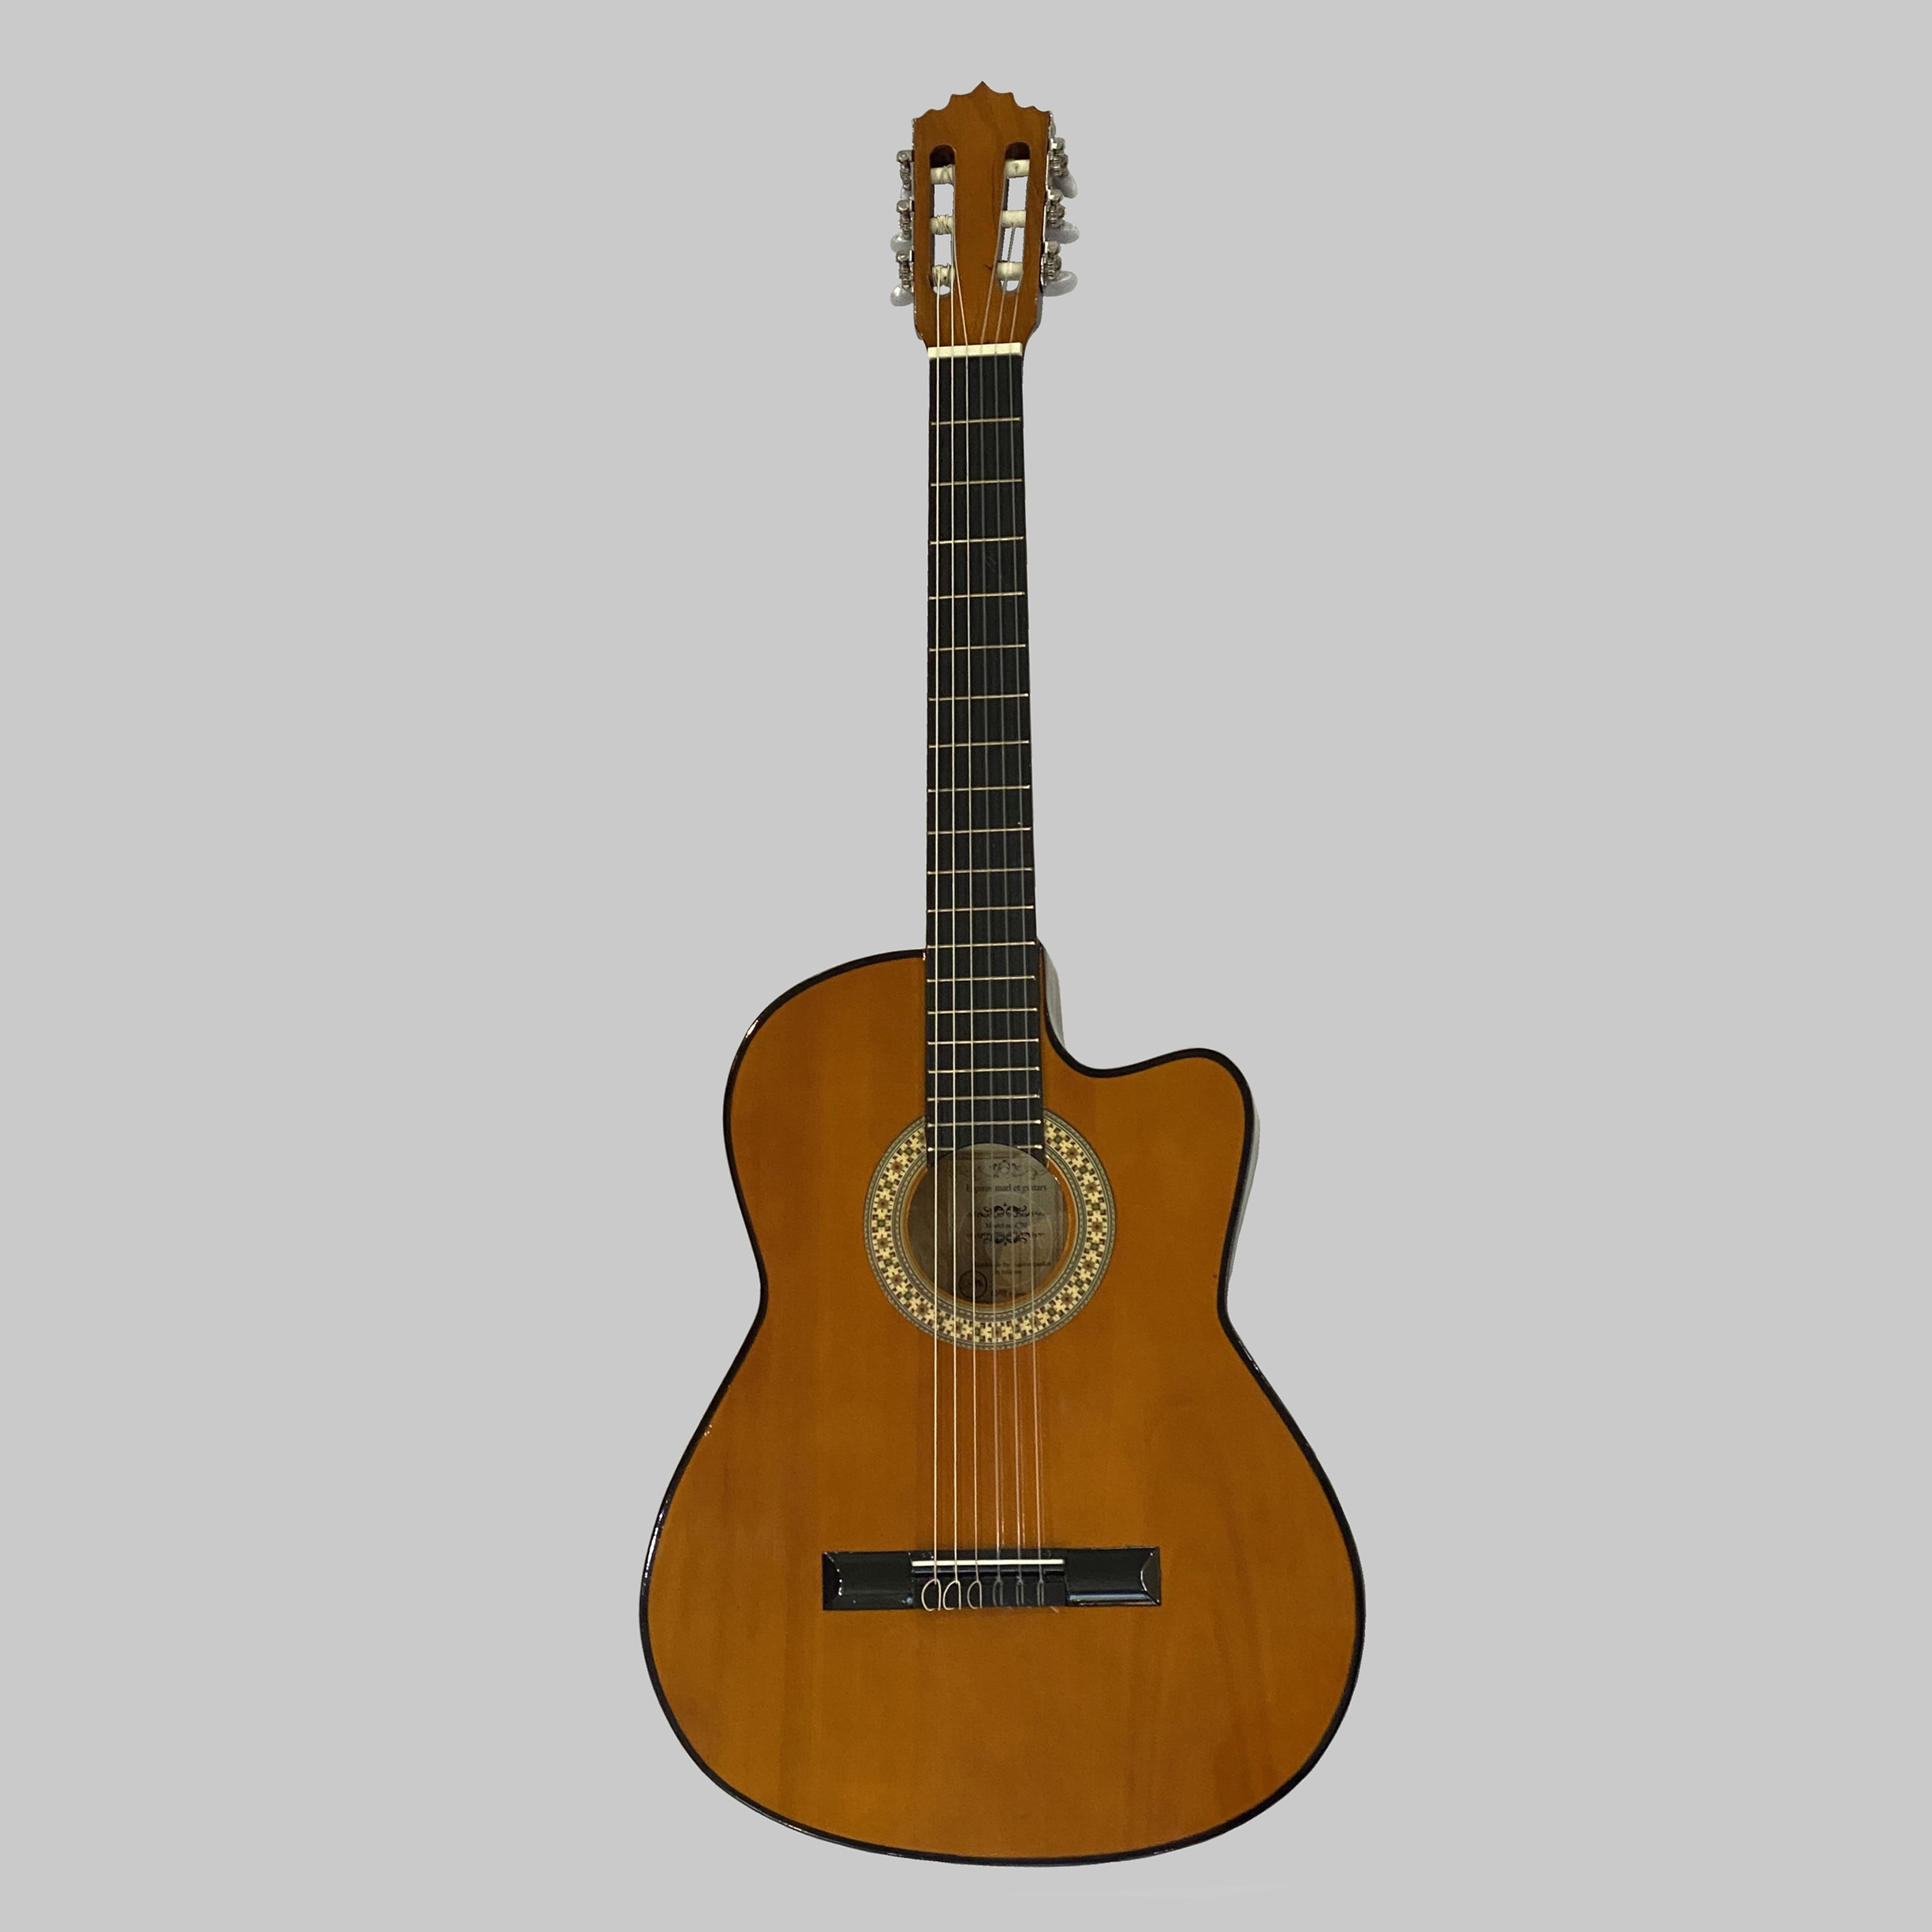 نکته خرید - قیمت روز گیتار پاپ اسپیروس مارکت مدل C71 خرید